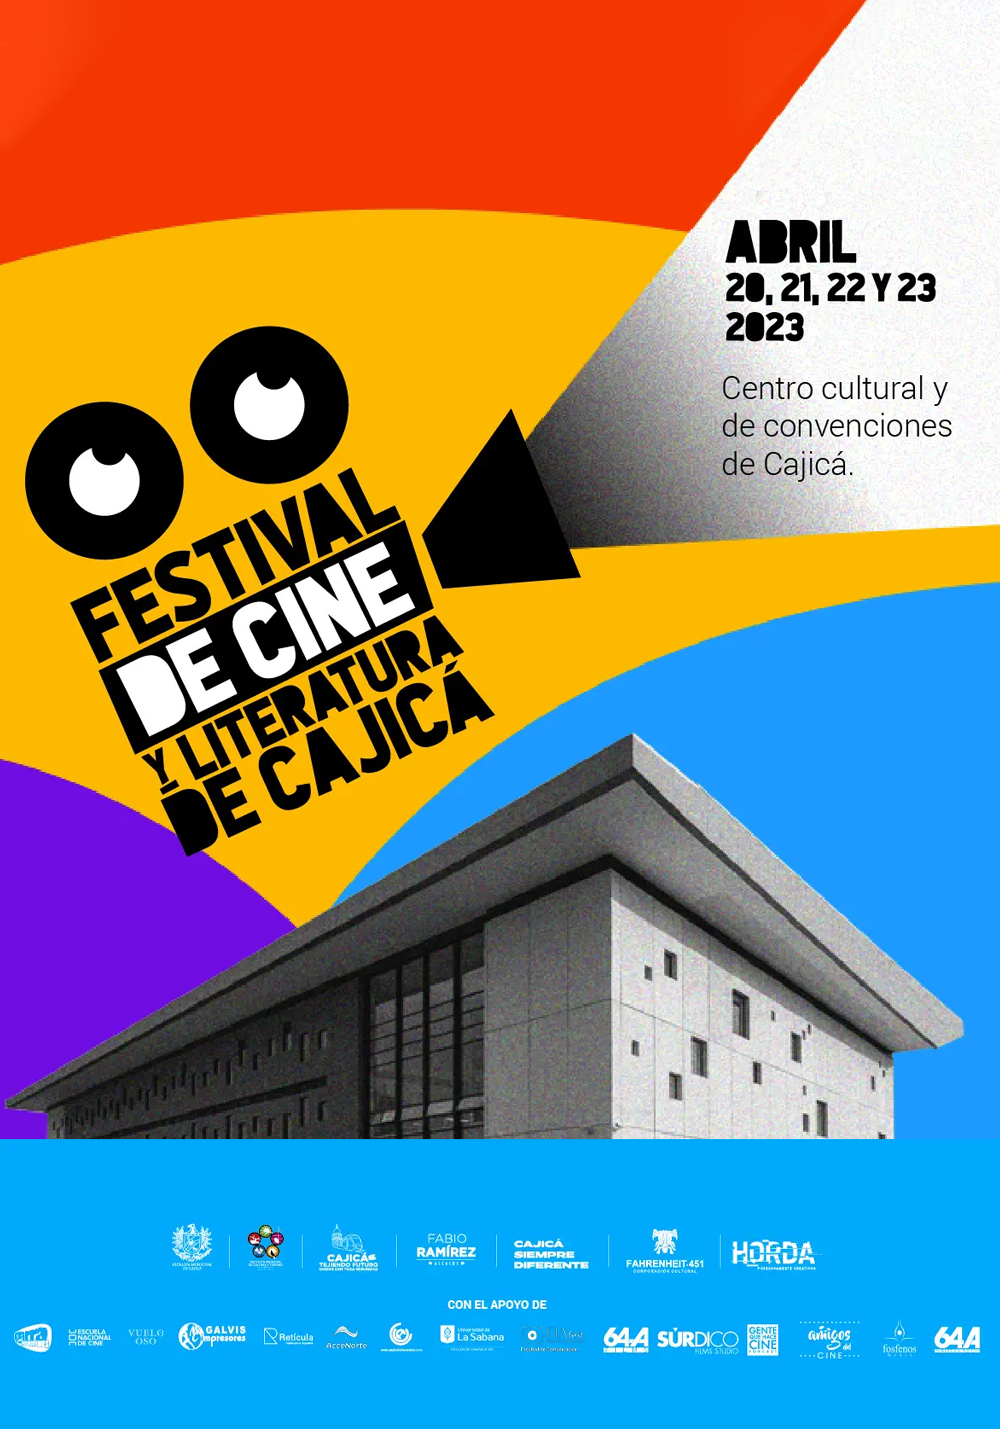 3 Festival de cine y literatura de cajica.png